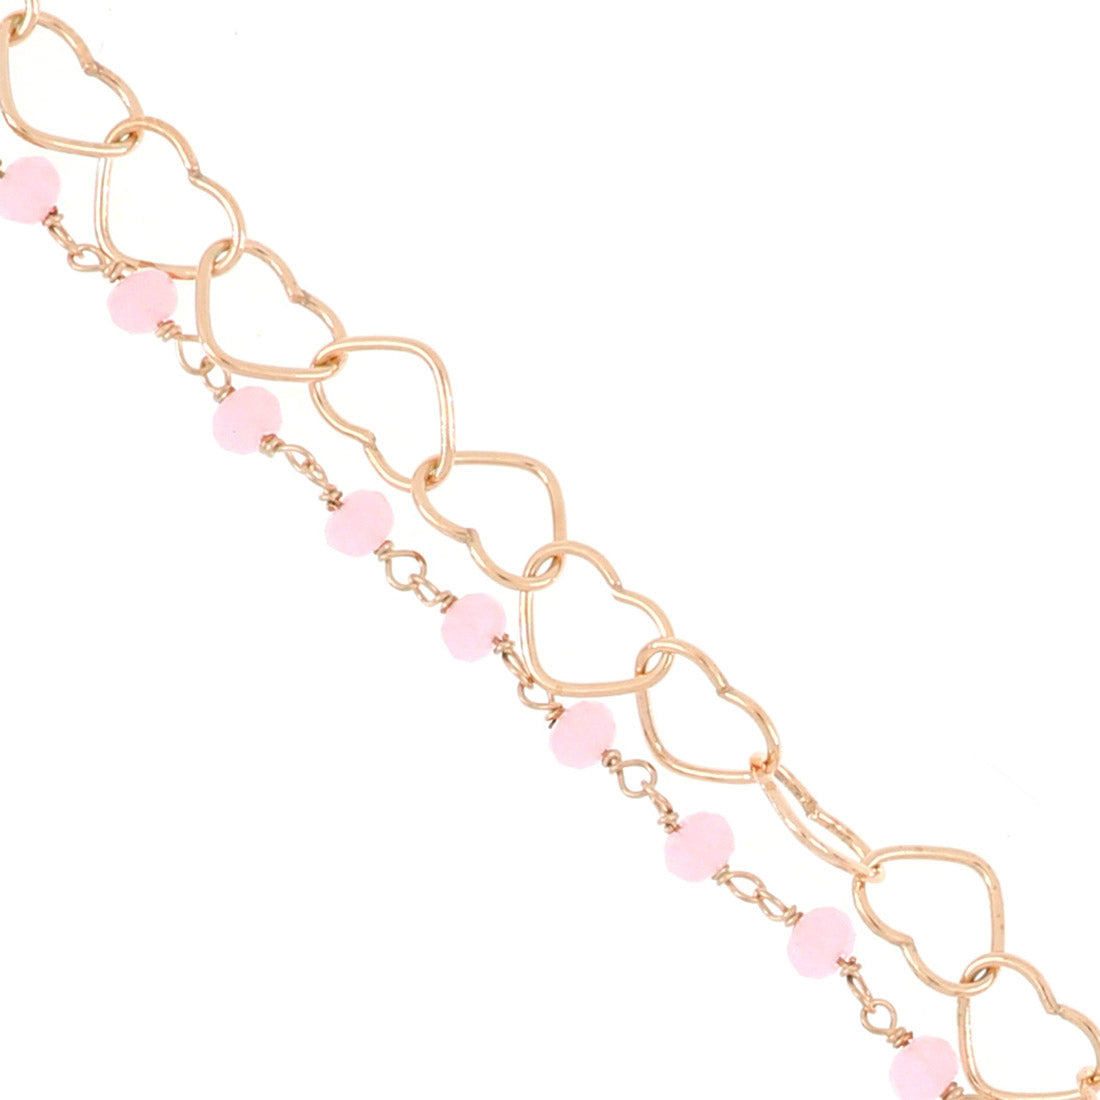 Dettaglio del bracciale con cuori intrecciati e rosario rosa